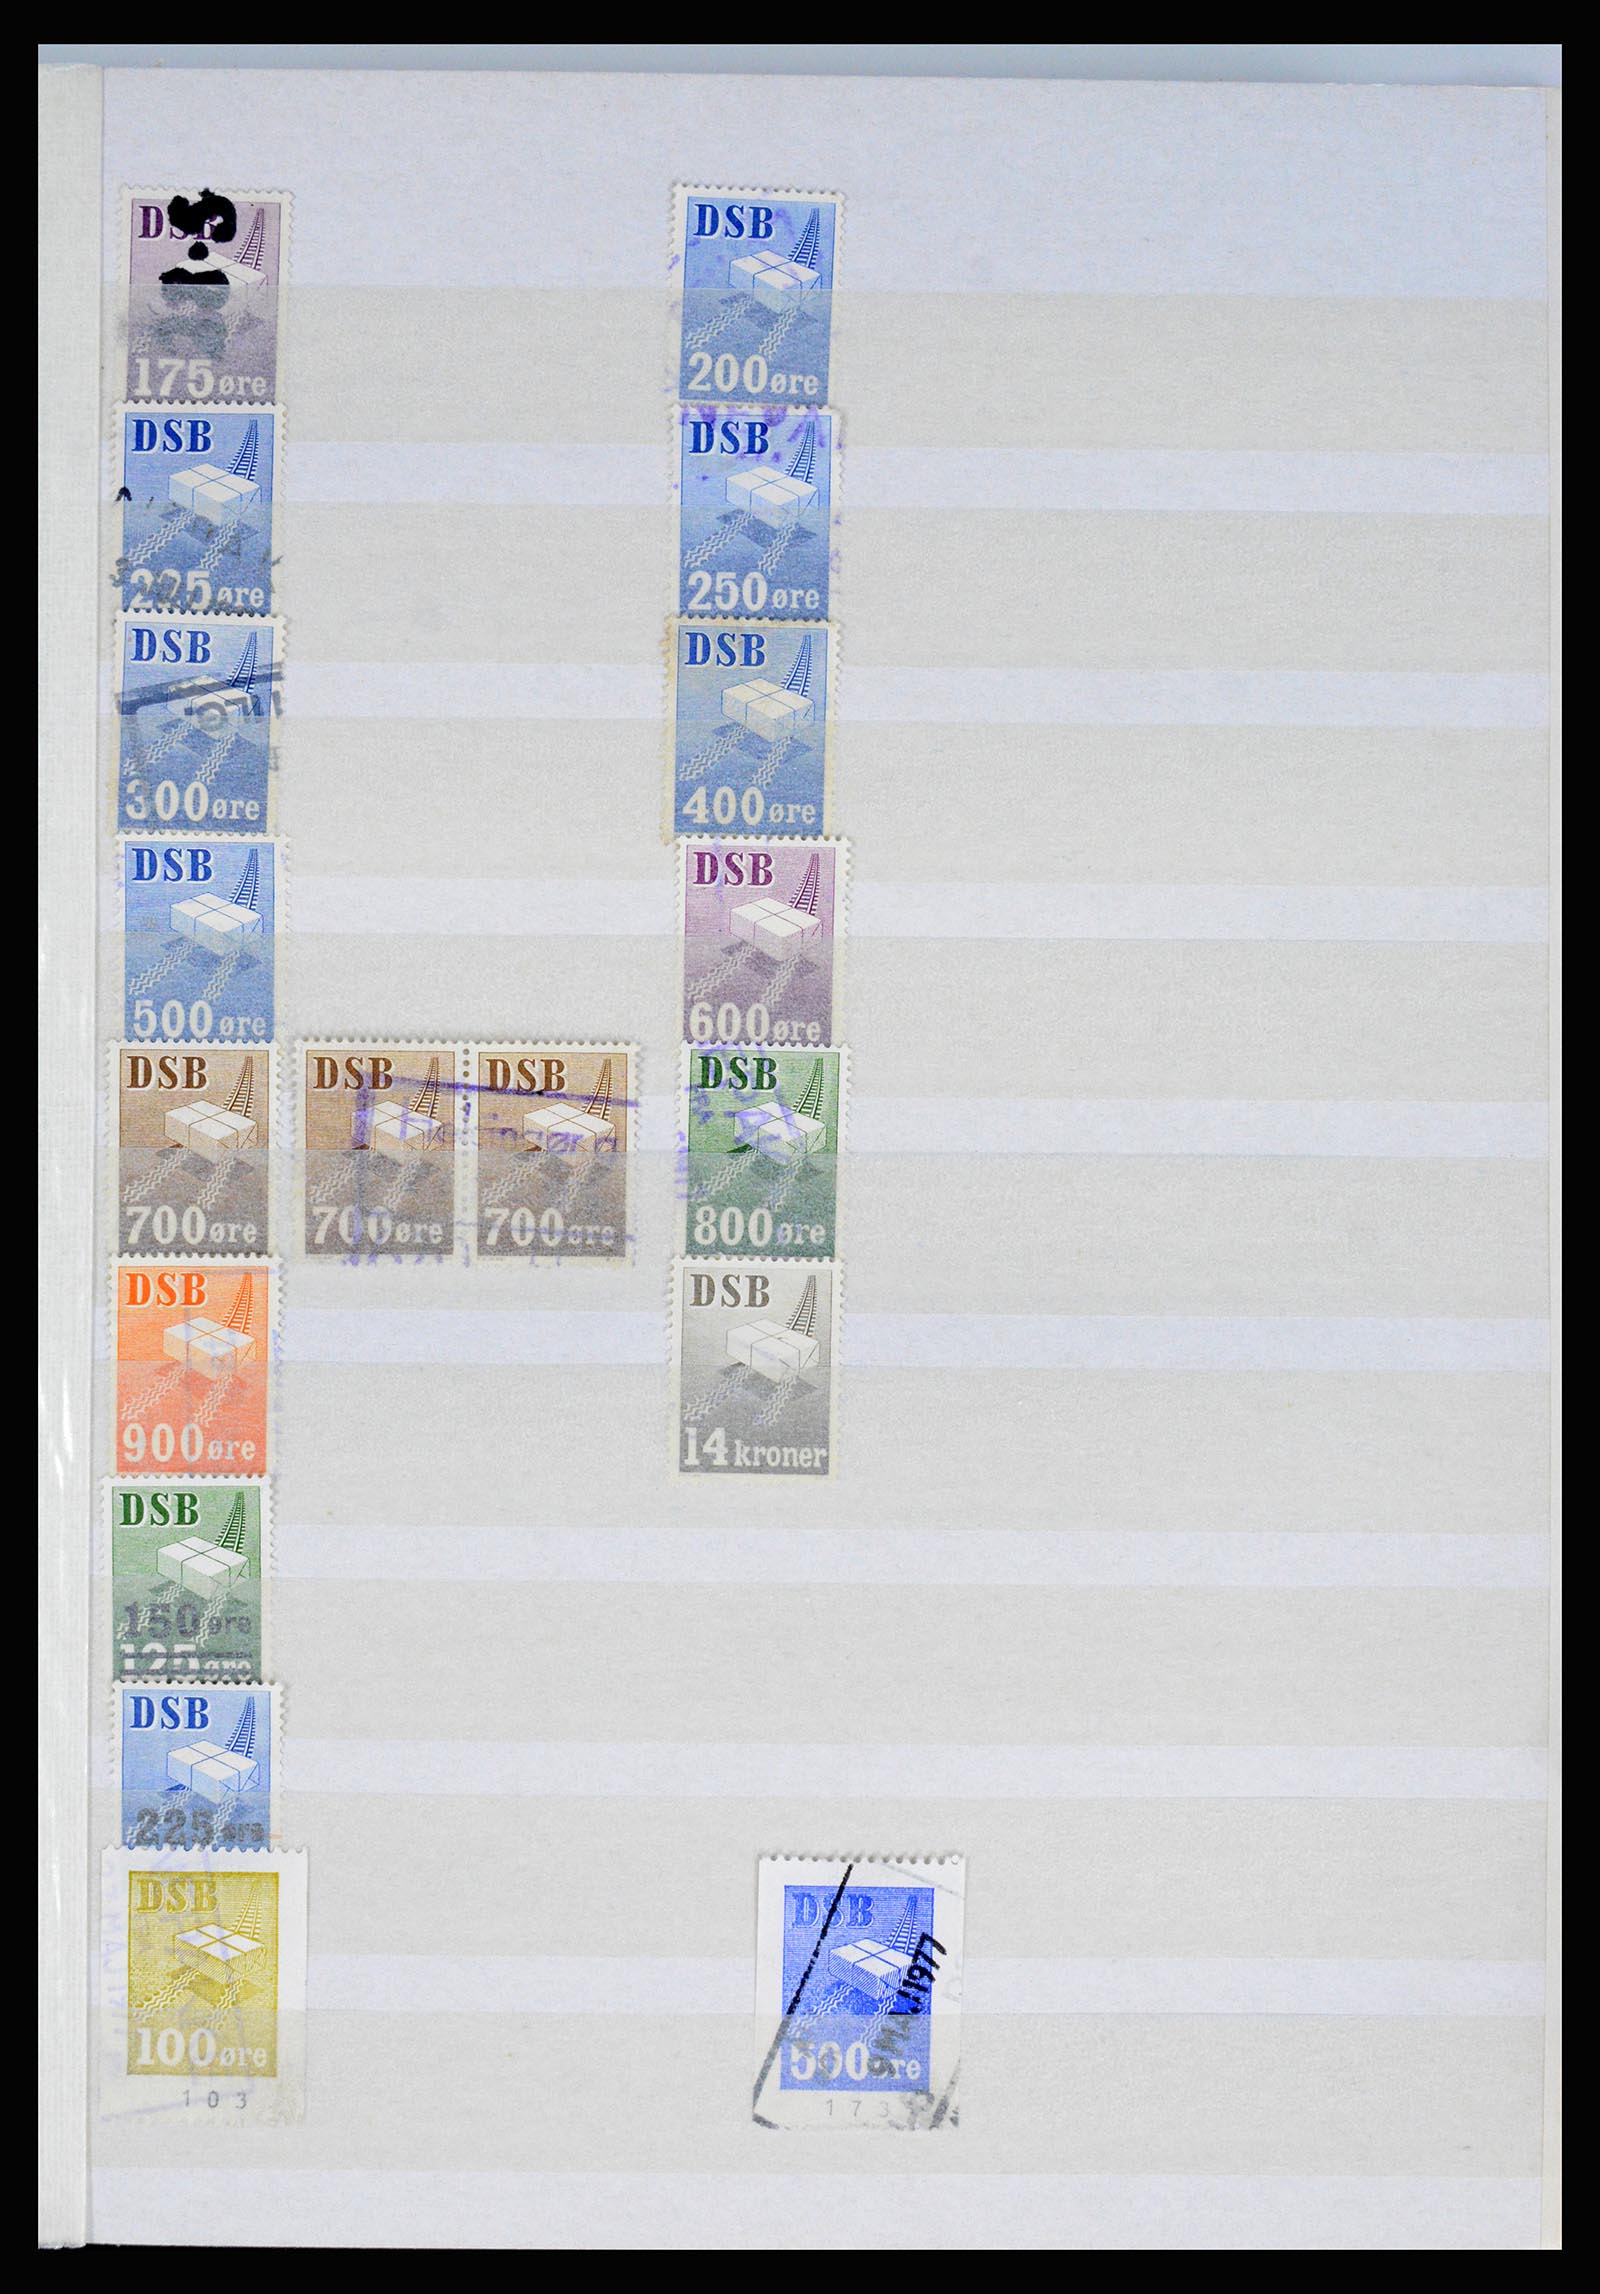 36982 011 - Postzegelverzameling 36982 Denemarken spoorwegzegels.